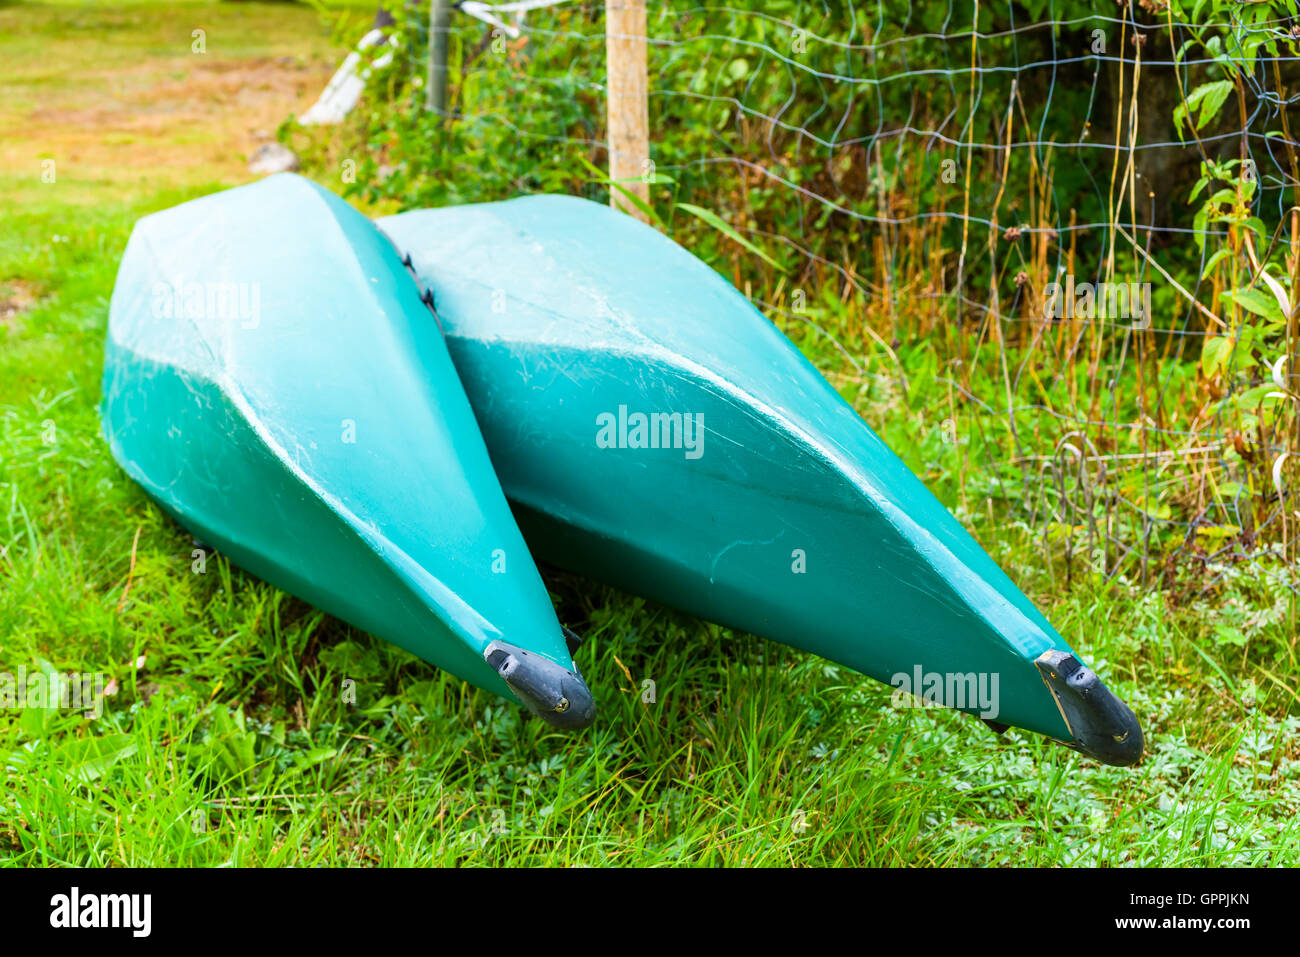 Zwei Kopf Kunststoff Kanus oder Kajaks auf dem trockenen. Die Kanus sind grün und Lauge neben einer saldierten Zaun neben einer schmalen walkwa Stockfoto